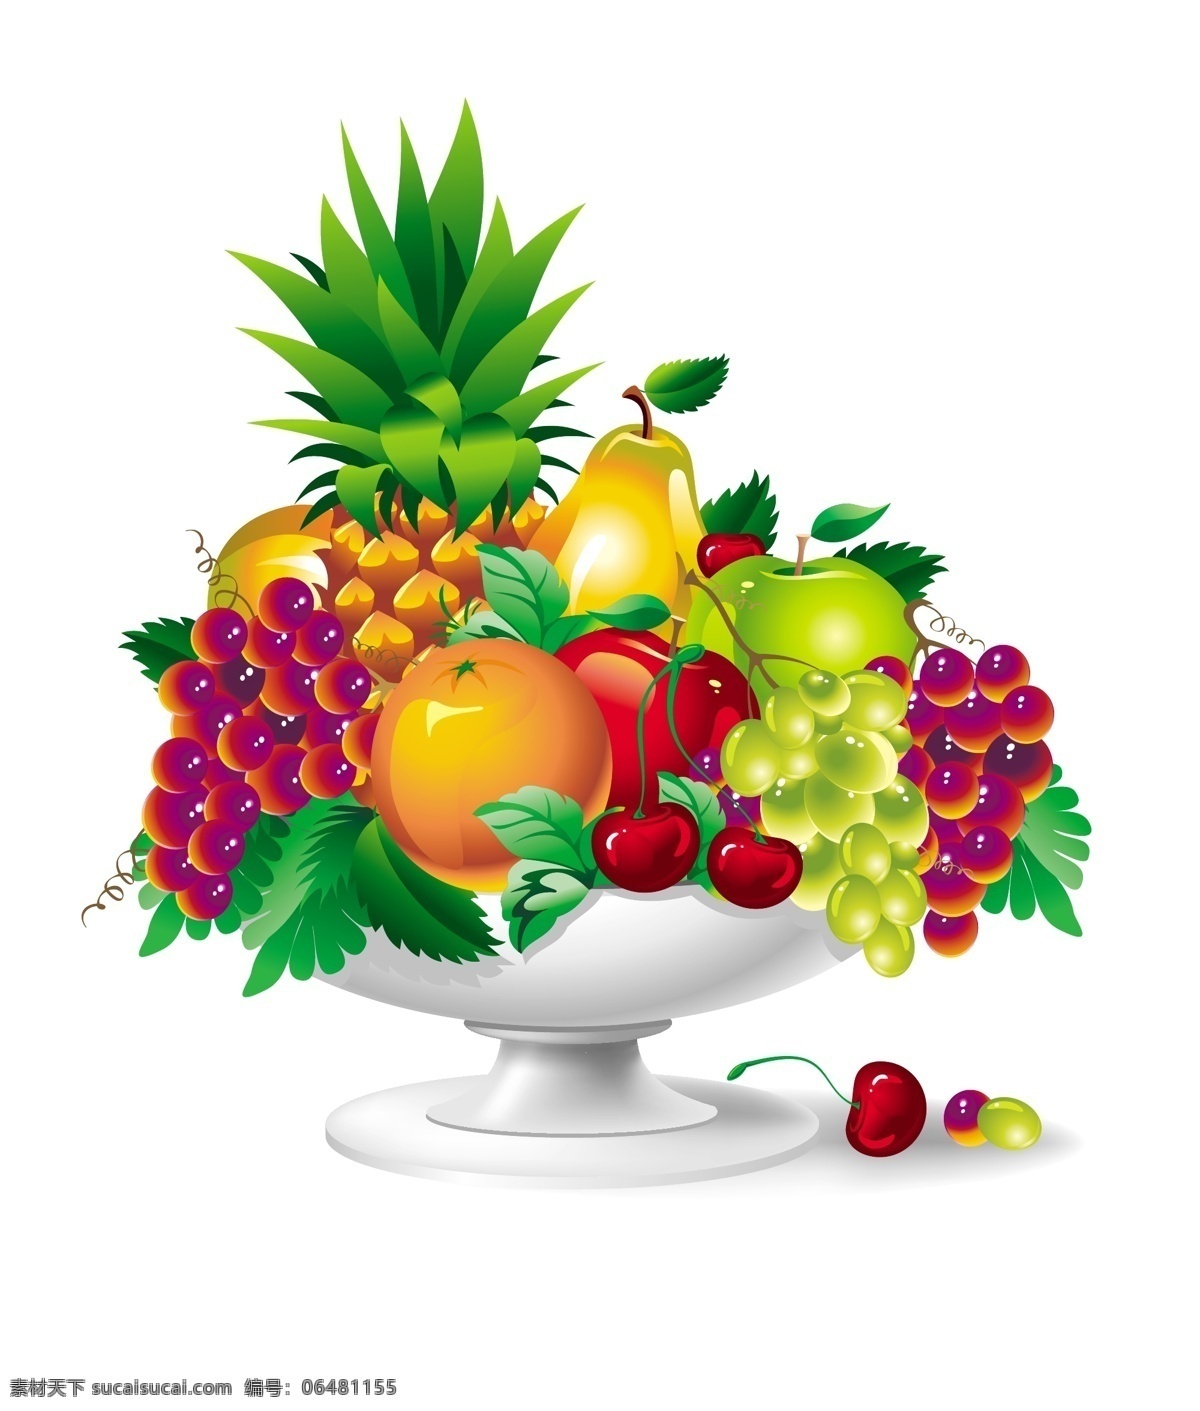 水果矢量图 樱桃 香蕉 葡萄 菠萝 苹果 矢量图 水果图 水果包装 新鲜水果 水果蛋糕 水果大全 盘子 动感水果 水果静物 生物世界 水果